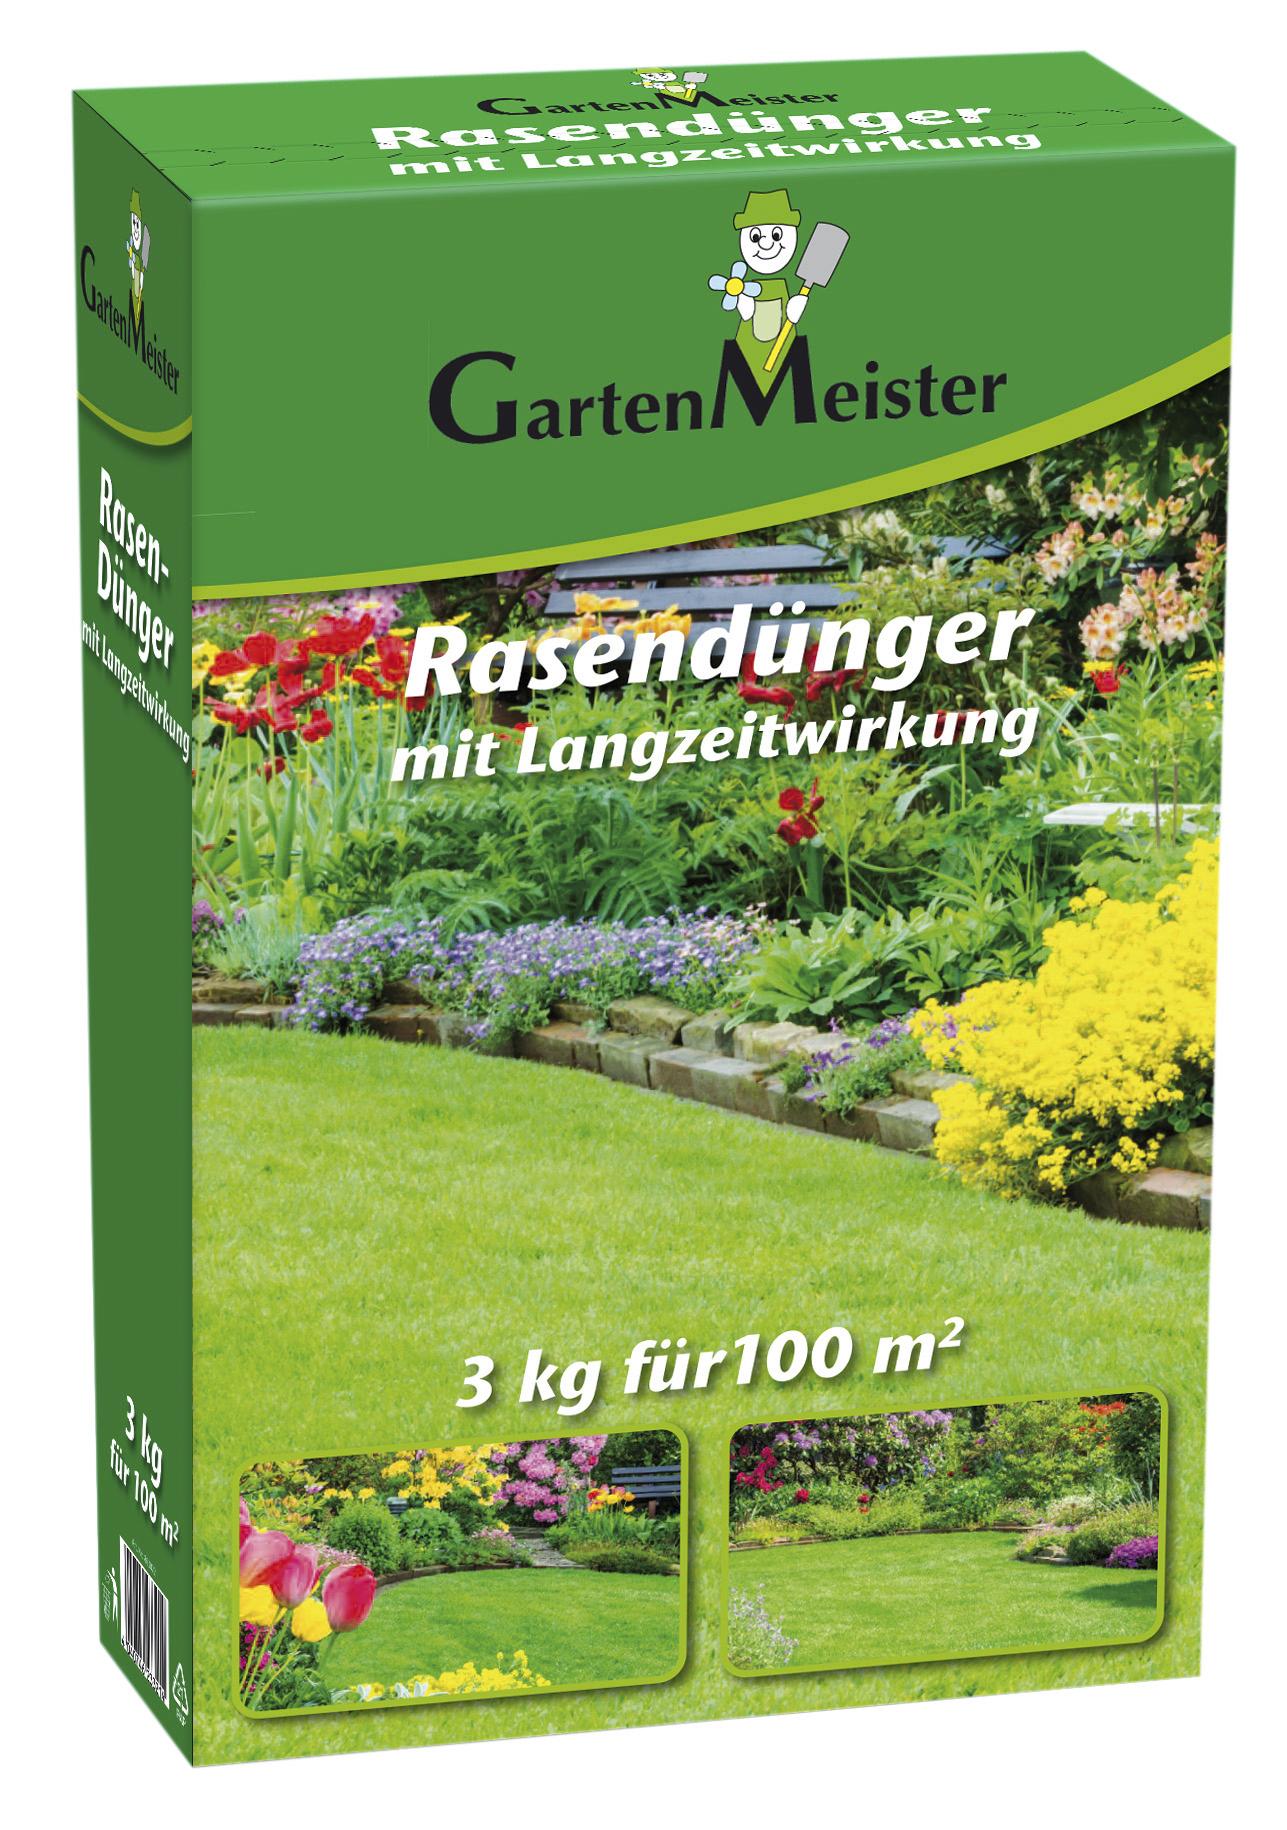 GartenMeister Rasendünger mit Langzeitwirkung, 3 kg - Reichweite bis zu 100 m²